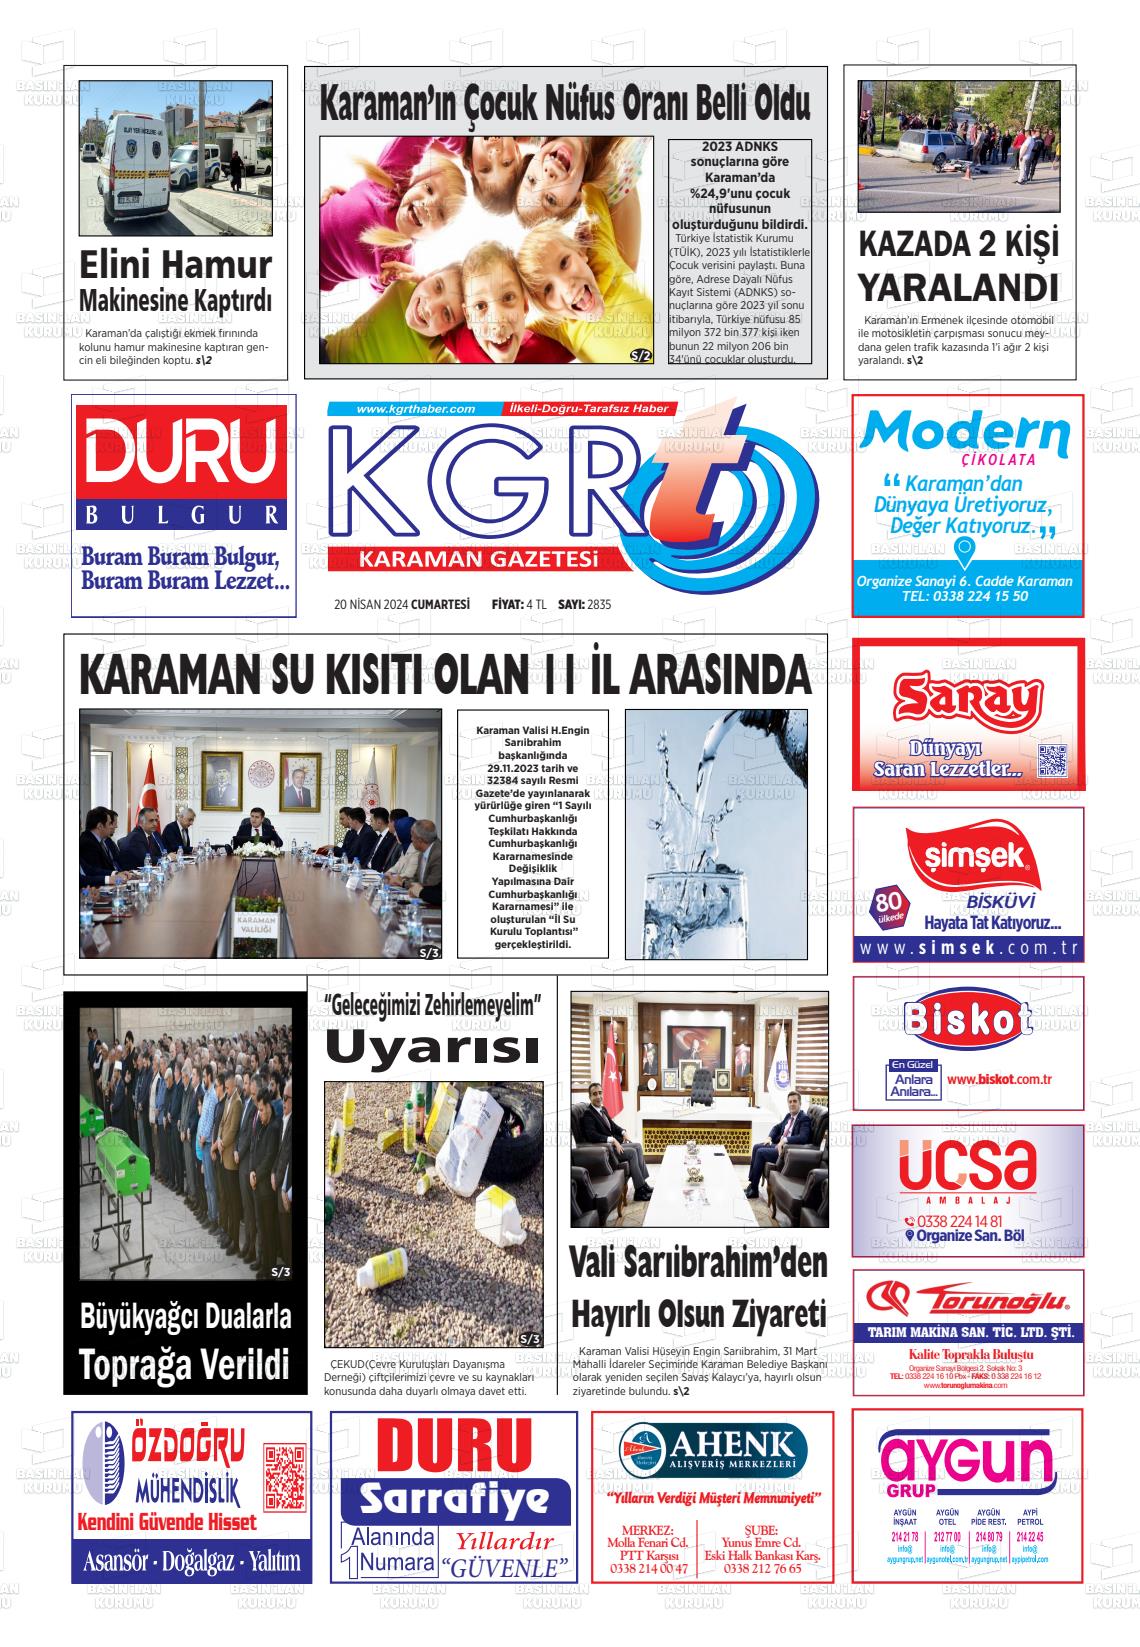 20 Nisan 2024 Kgrt Karaman Gazete Manşeti